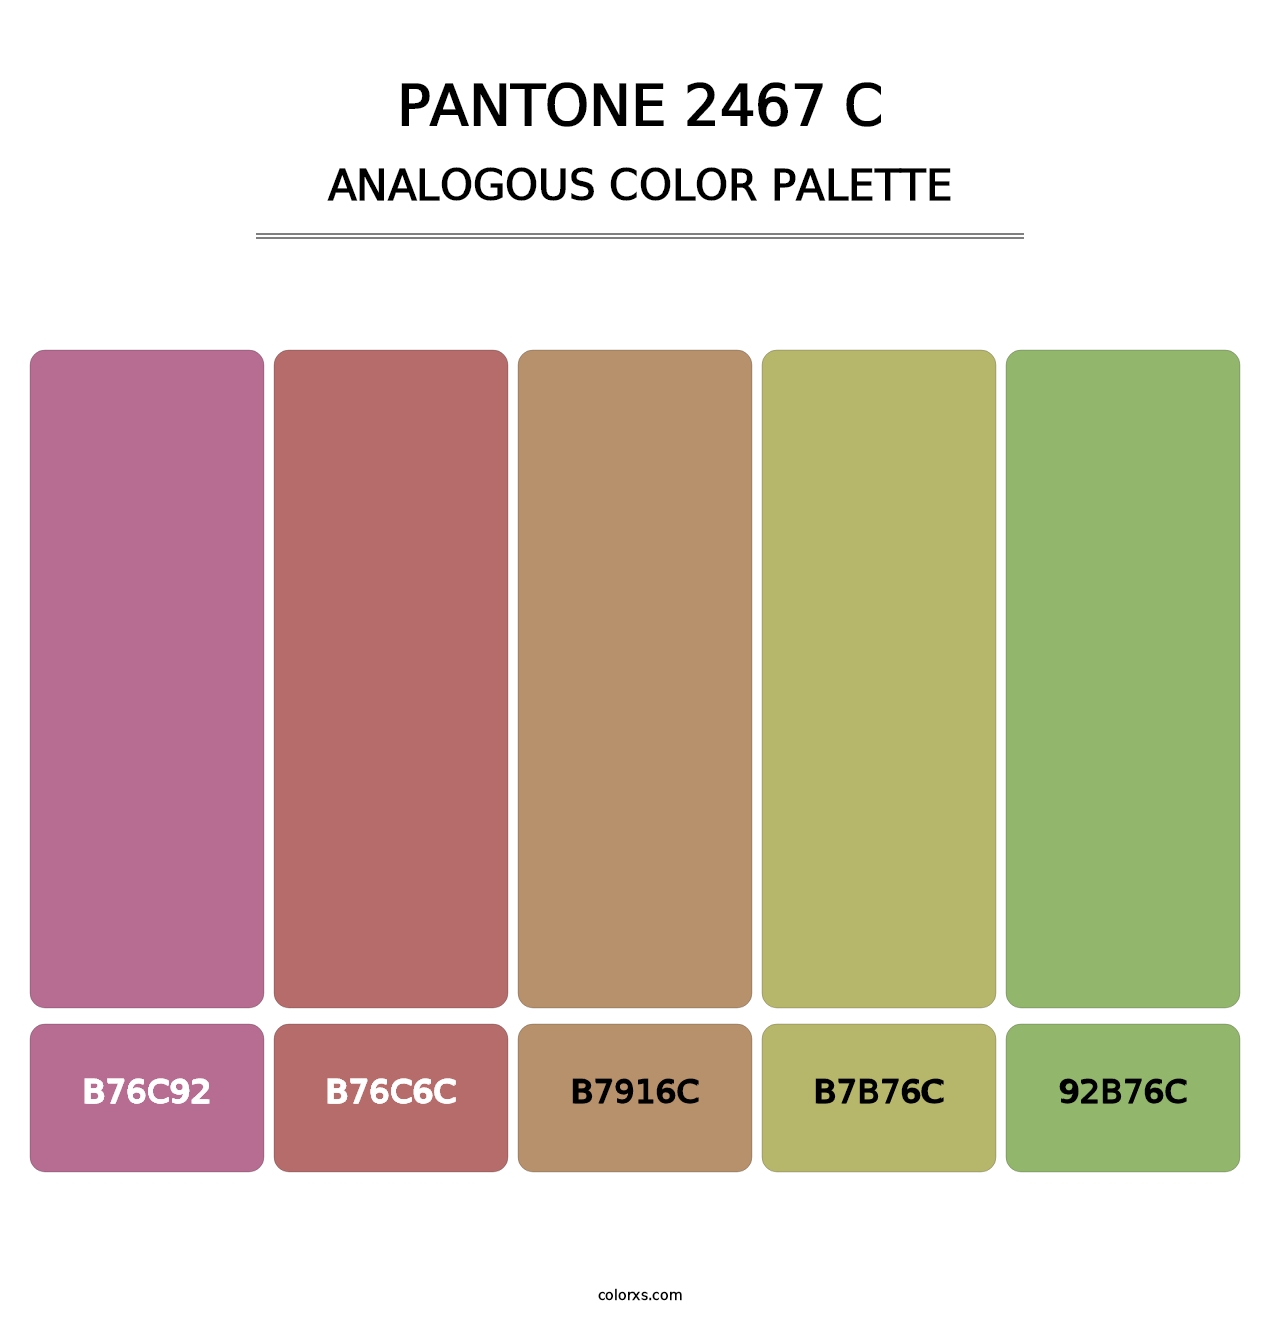 PANTONE 2467 C - Analogous Color Palette